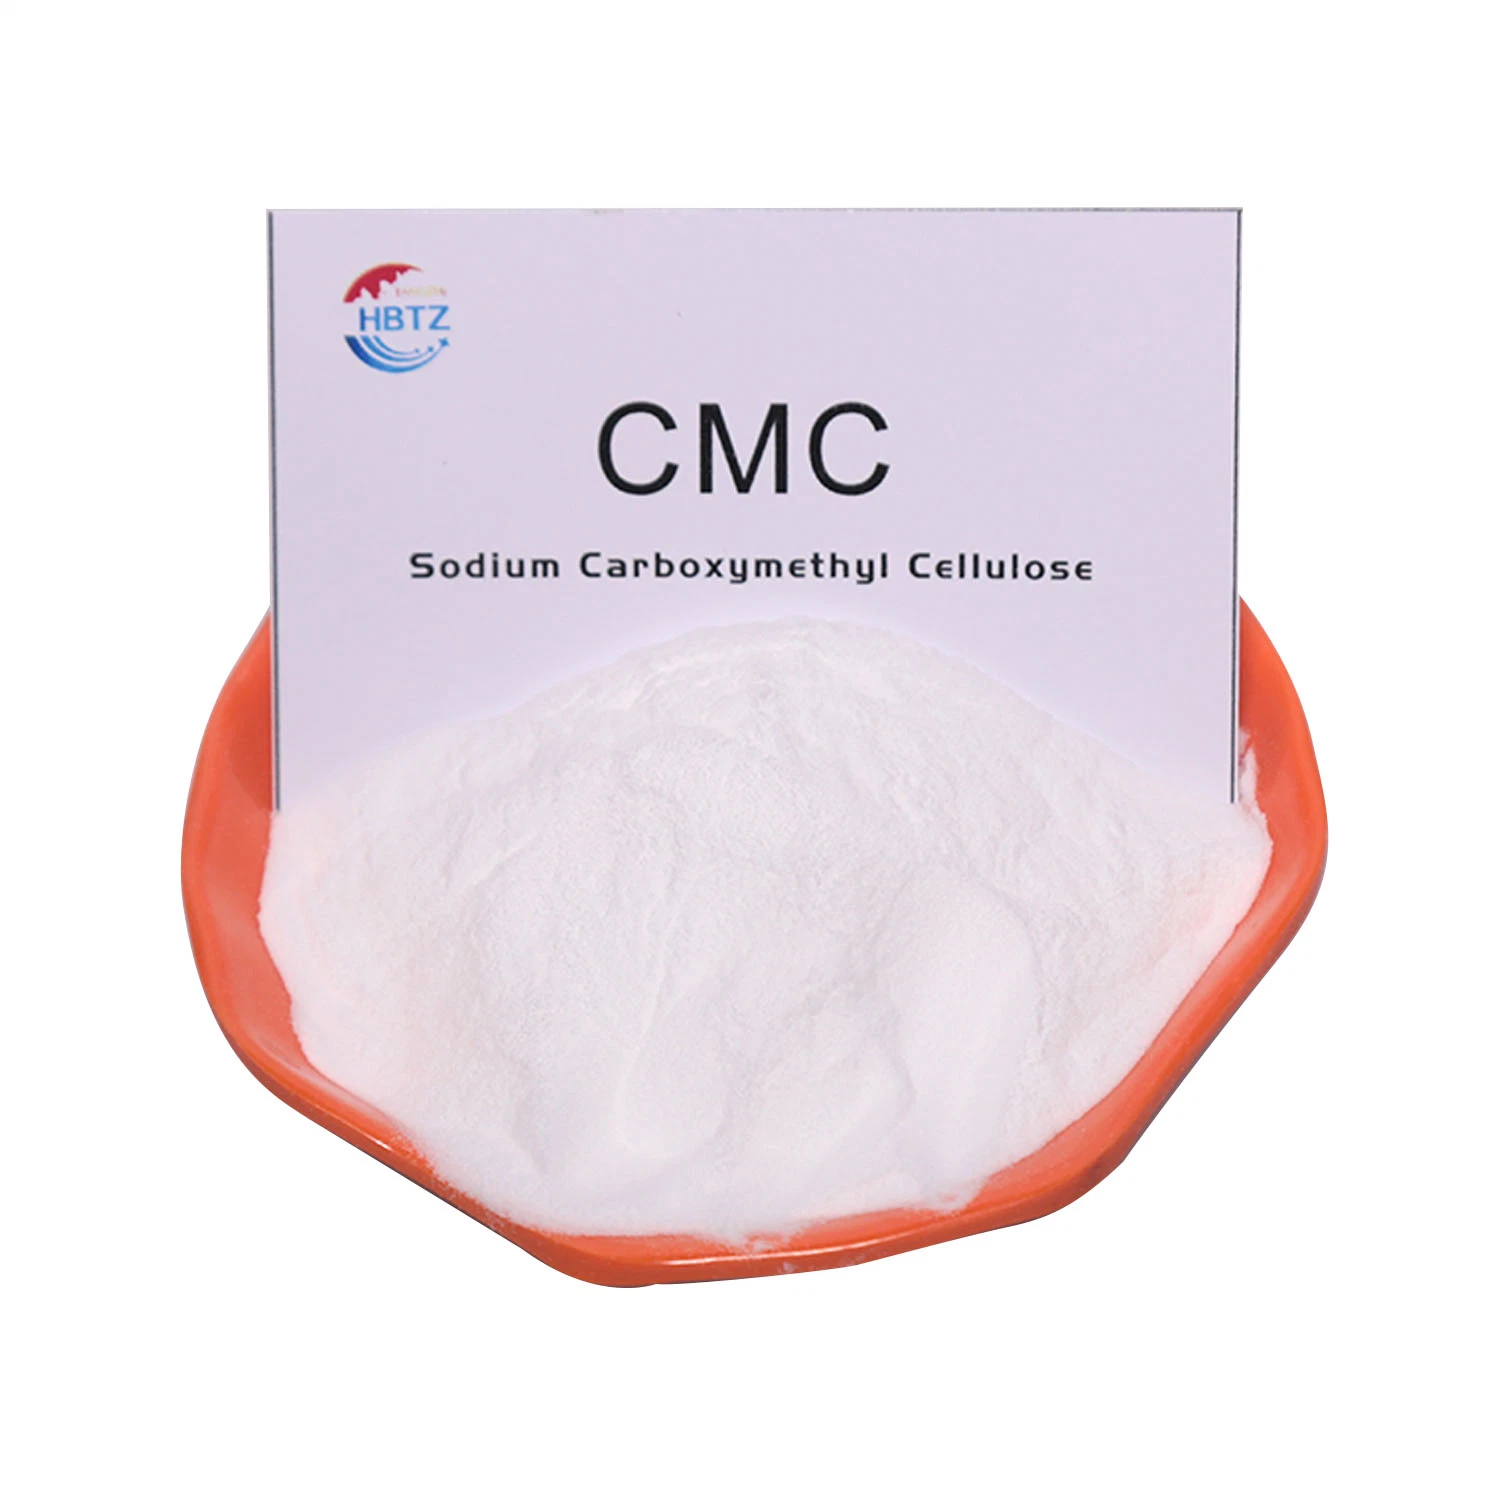 Carboximetilcelulosa de sodio se utiliza ampliamente el CMC para la impresión de la cerámica de pasta de dientes diariamente el CMC